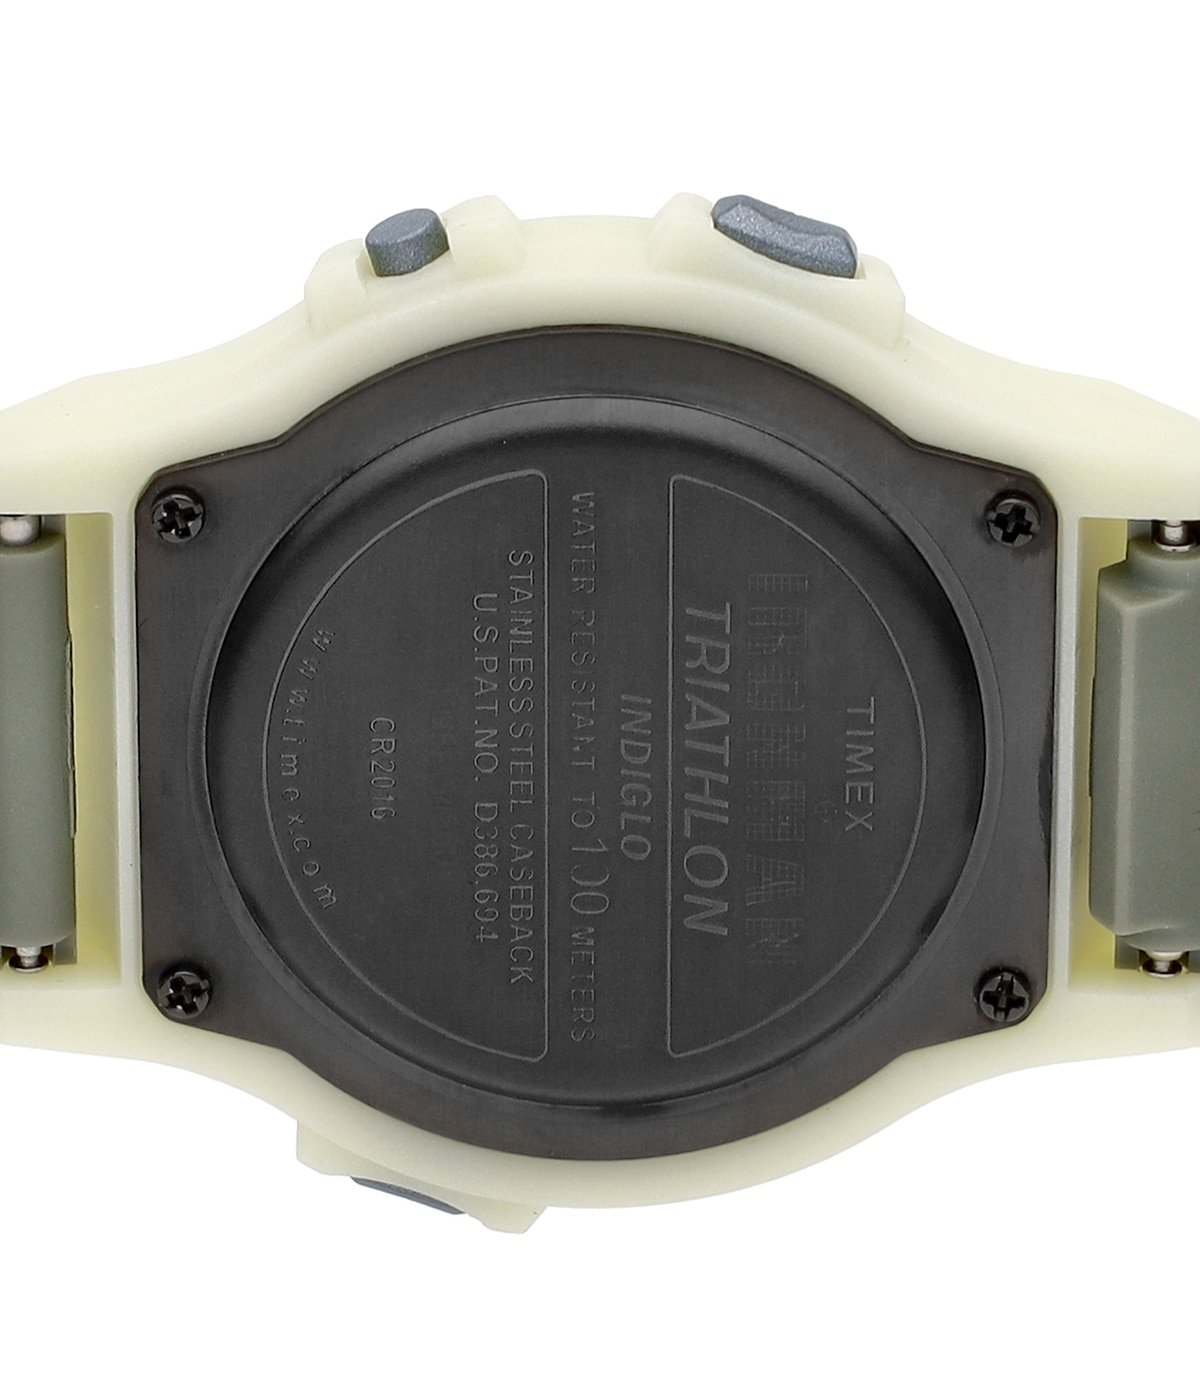 Abu Garcia✕TIMEX コラボ時計 新品未使用 ミリタリー アウトドア